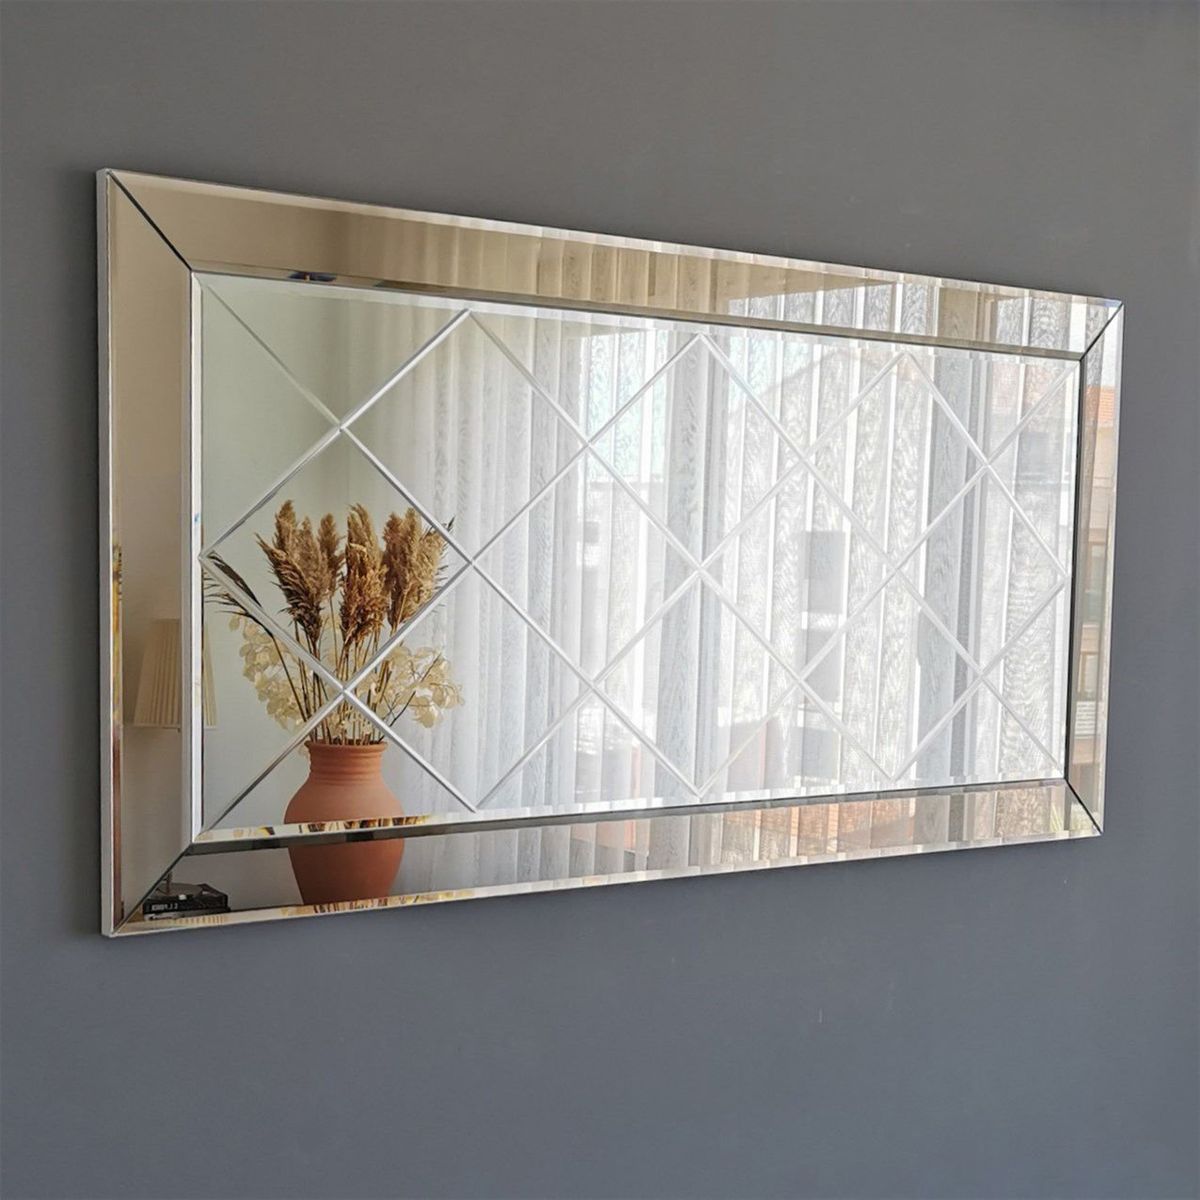 Ayna En Ucuz Ayna Fiyatlari 1479 Farkli Model